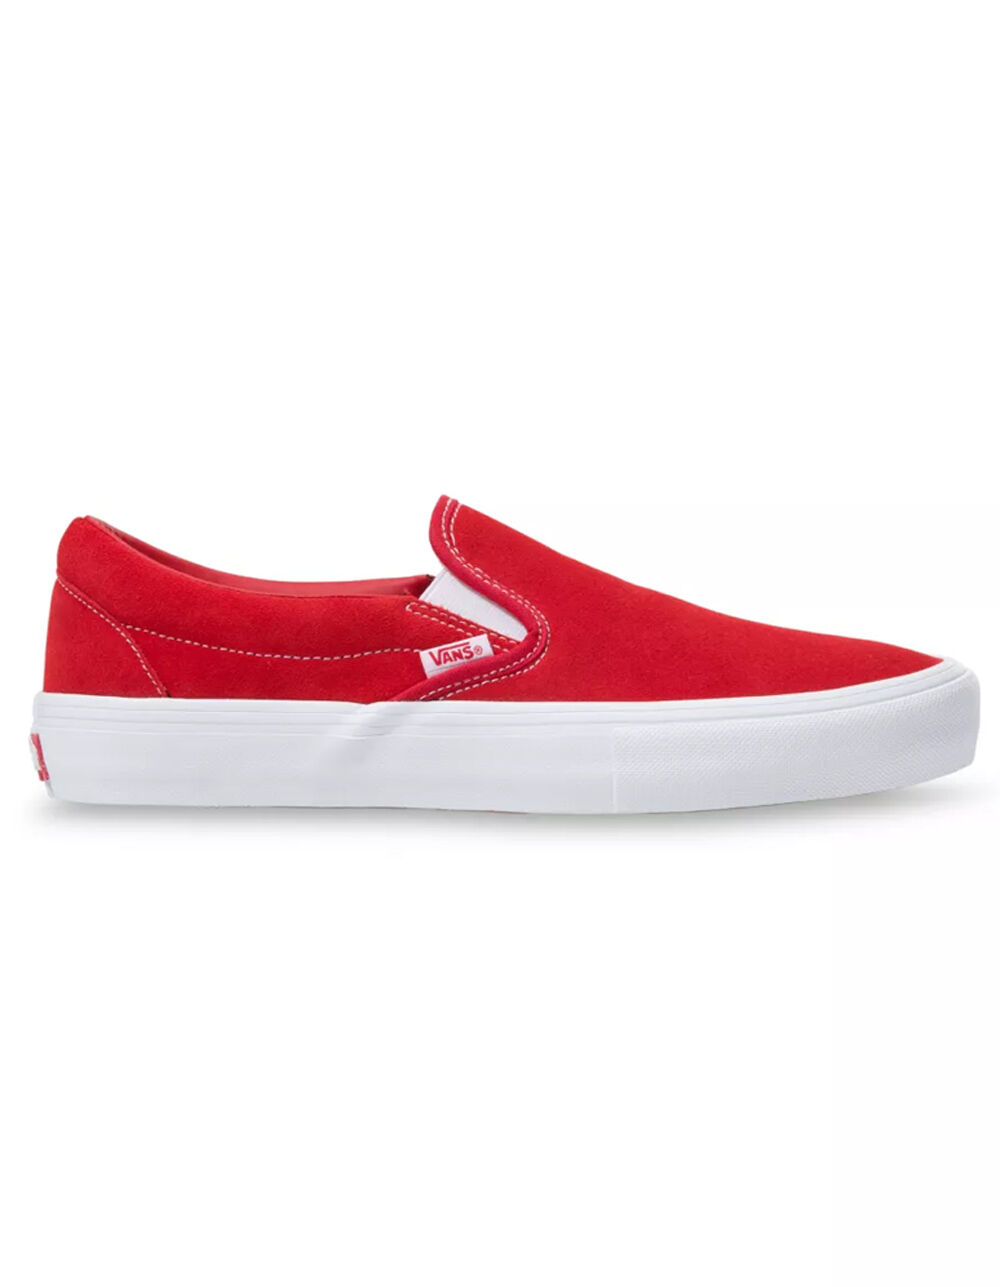 VANS Slip-On Pro Red Shoes - RED | Tillys